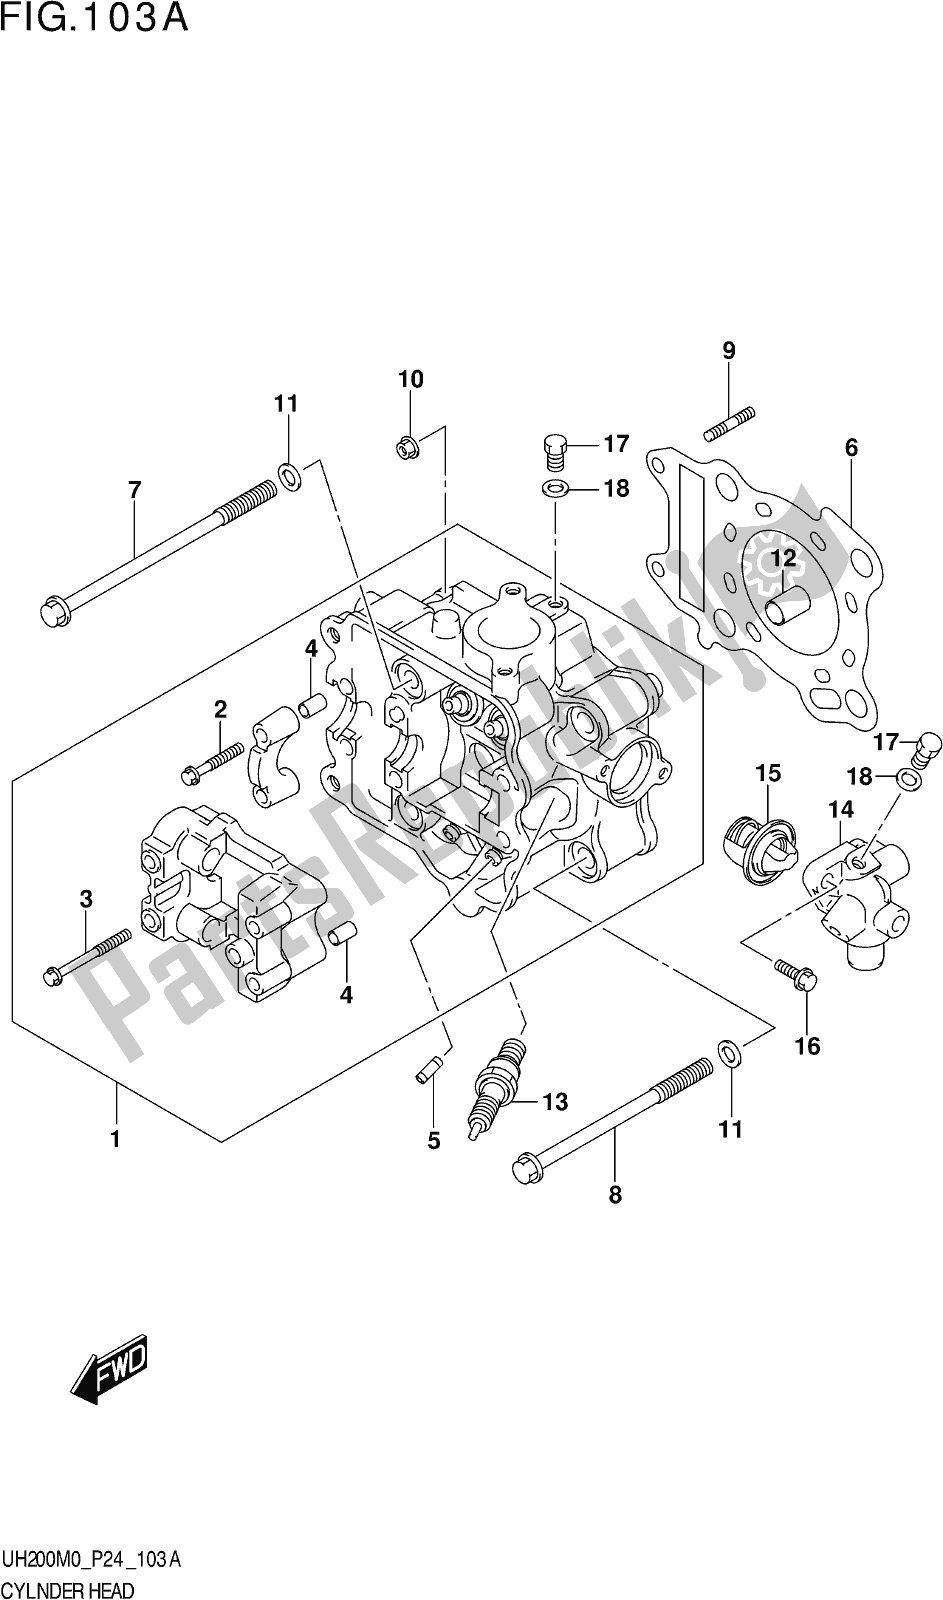 Alle onderdelen voor de Fig. 103a Cylinder Head van de Suzuki UH 200 2020